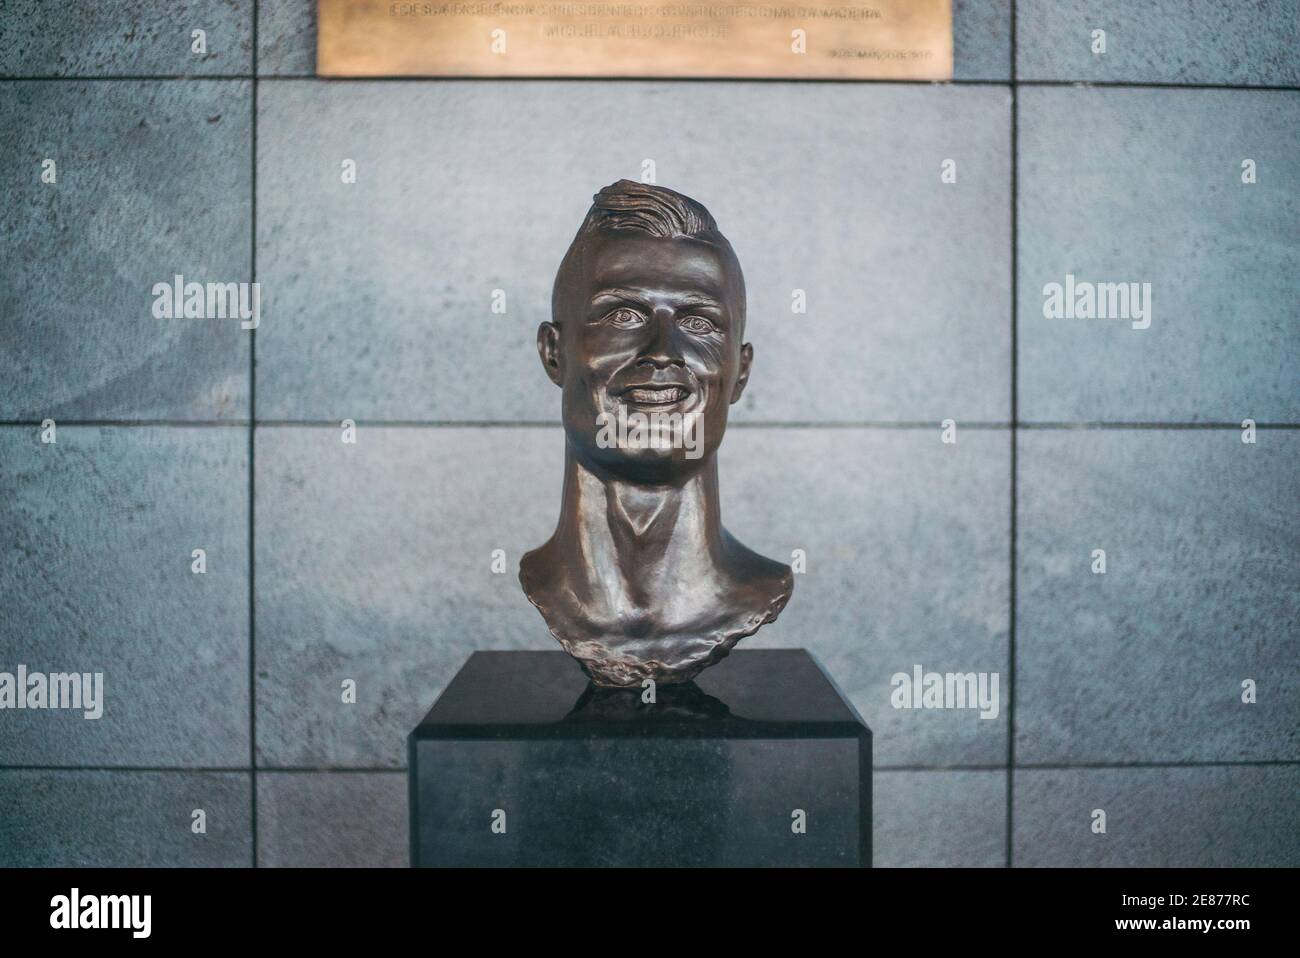 Un buste en bronze du footballeur Cristiano Ronaldo à l'aéroport de Madère en 2018. La sculpture a obtenu l'infamie virale pour sa ressemblance étrange avec l'étoile Banque D'Images